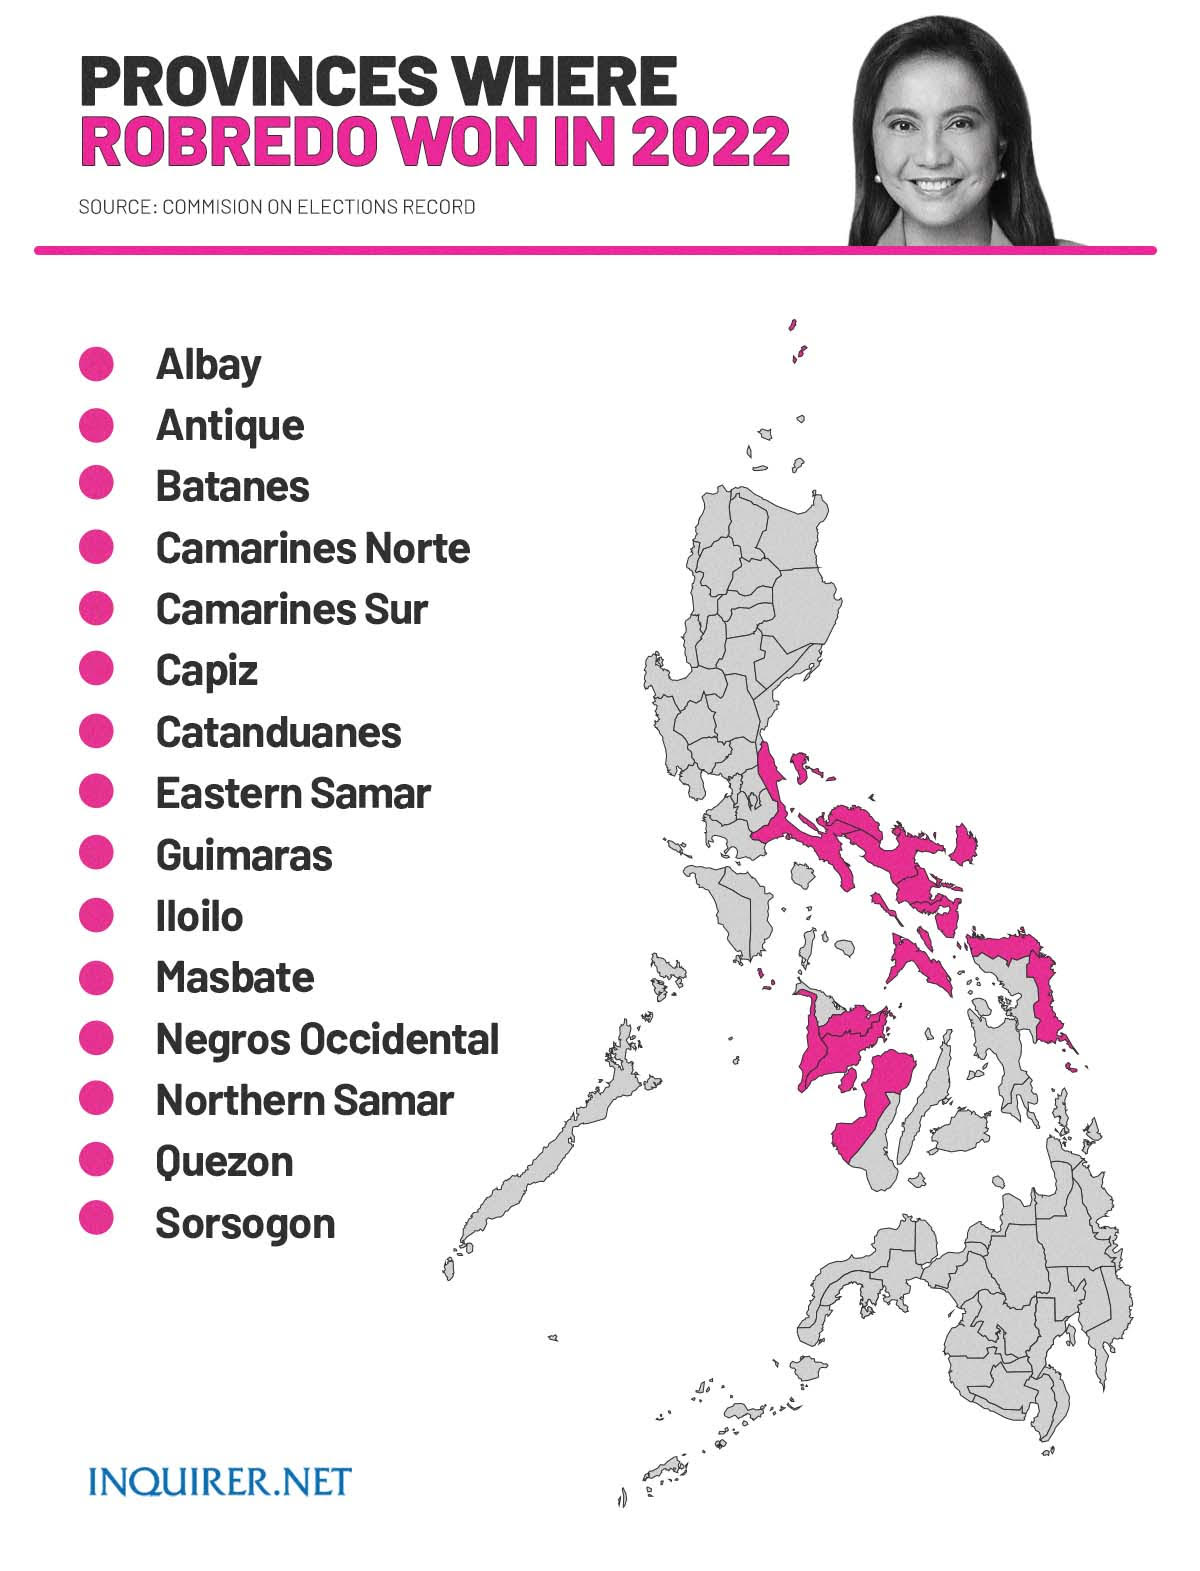 Provinces where Robredo won in 2022